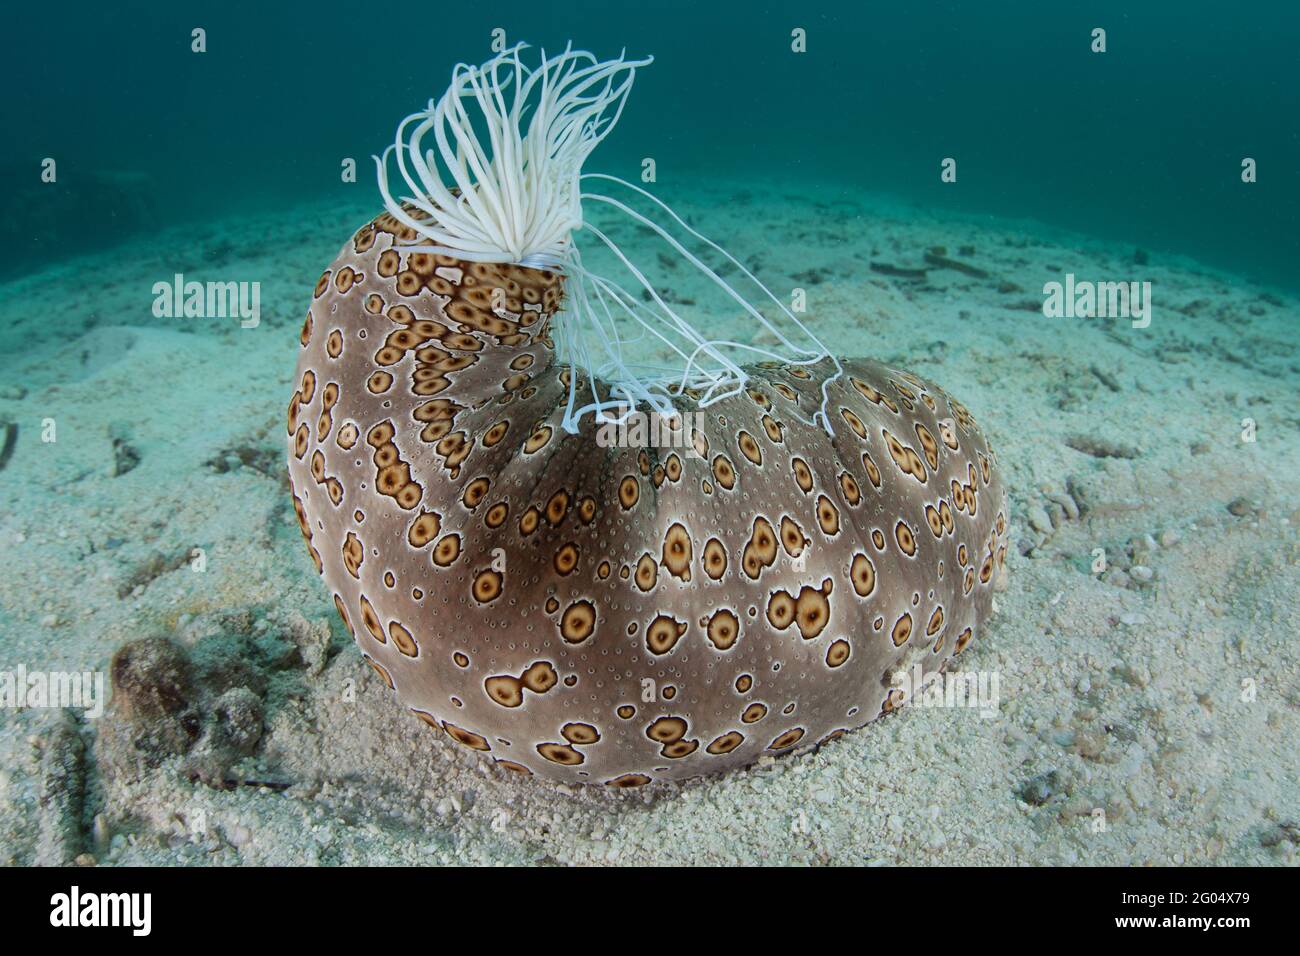 Eine große Seegurke, Bohadschia argus, findet sich am Meeresboden in Palau. Dieses Stachelhäuter kann klebrige, giftige Tubuli auswerfen, um Raubtiere abzuschrecken. Stockfoto